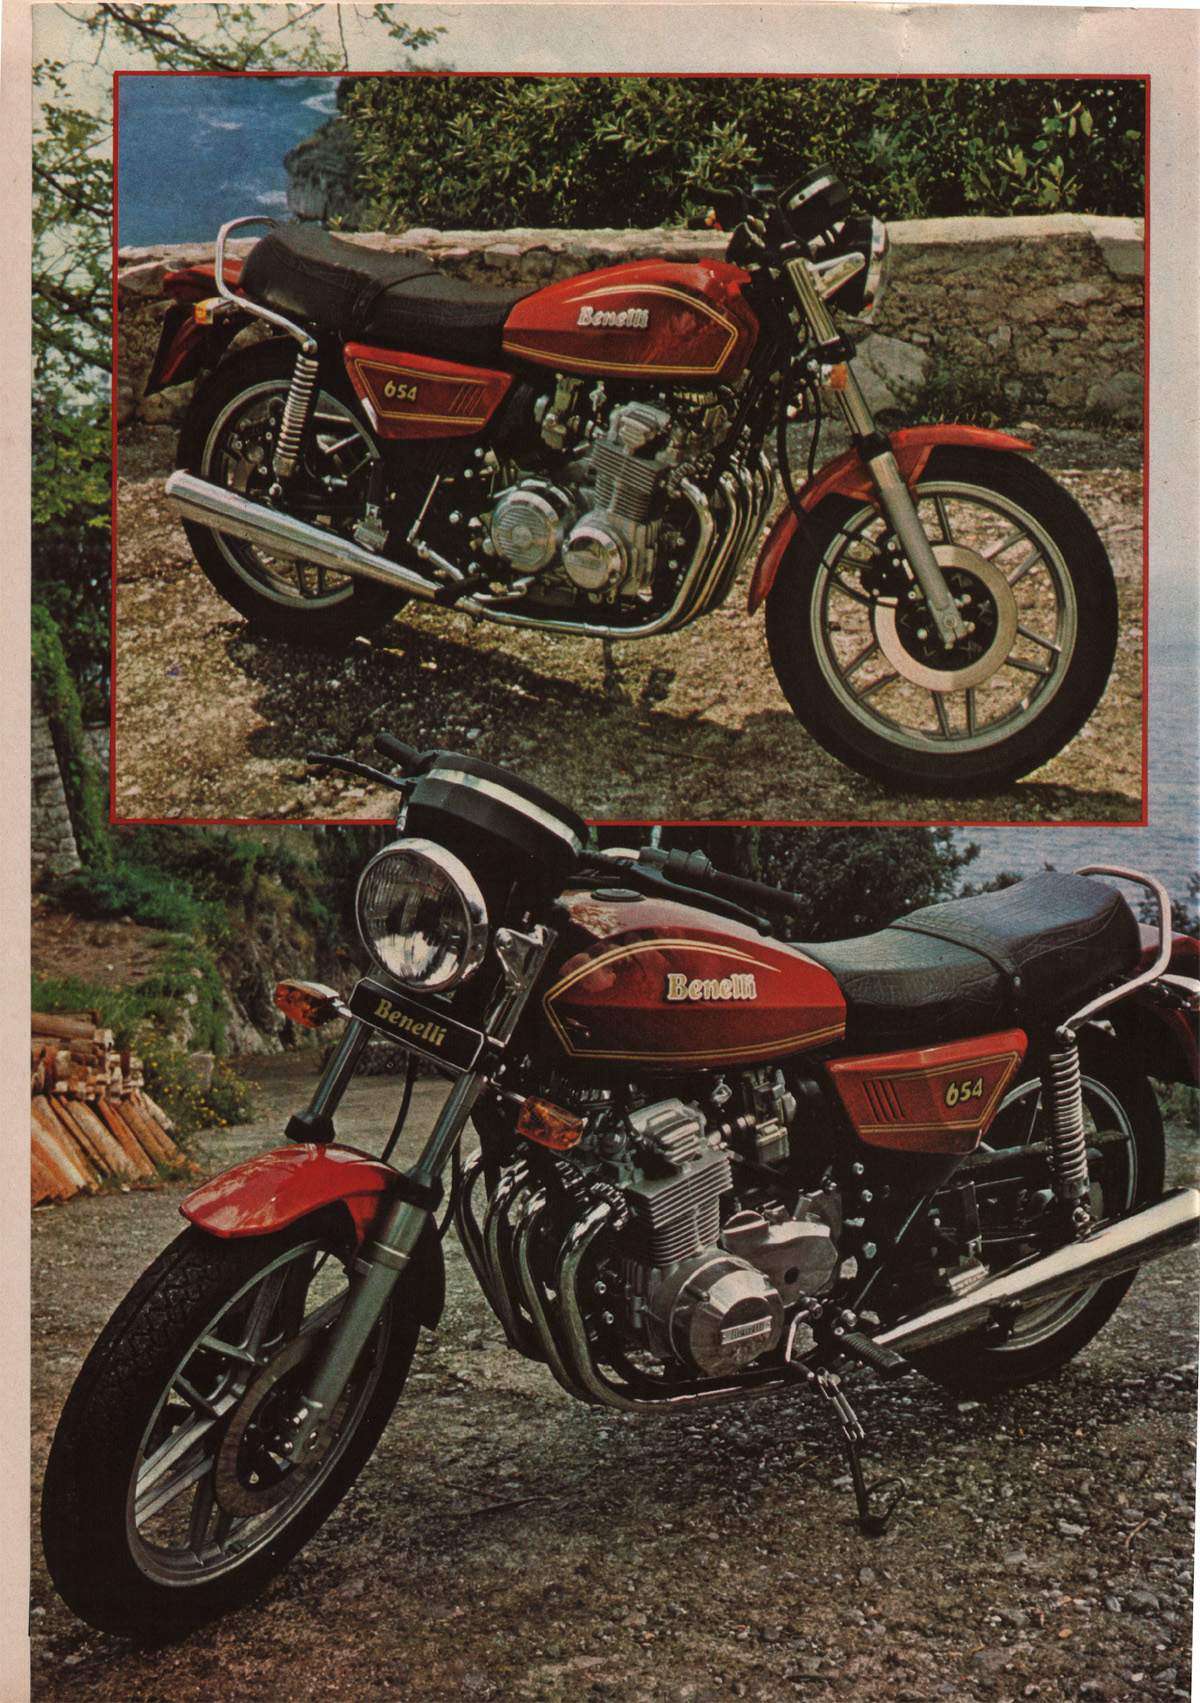 Мотоцикл Benelli 654 Quattro 1980